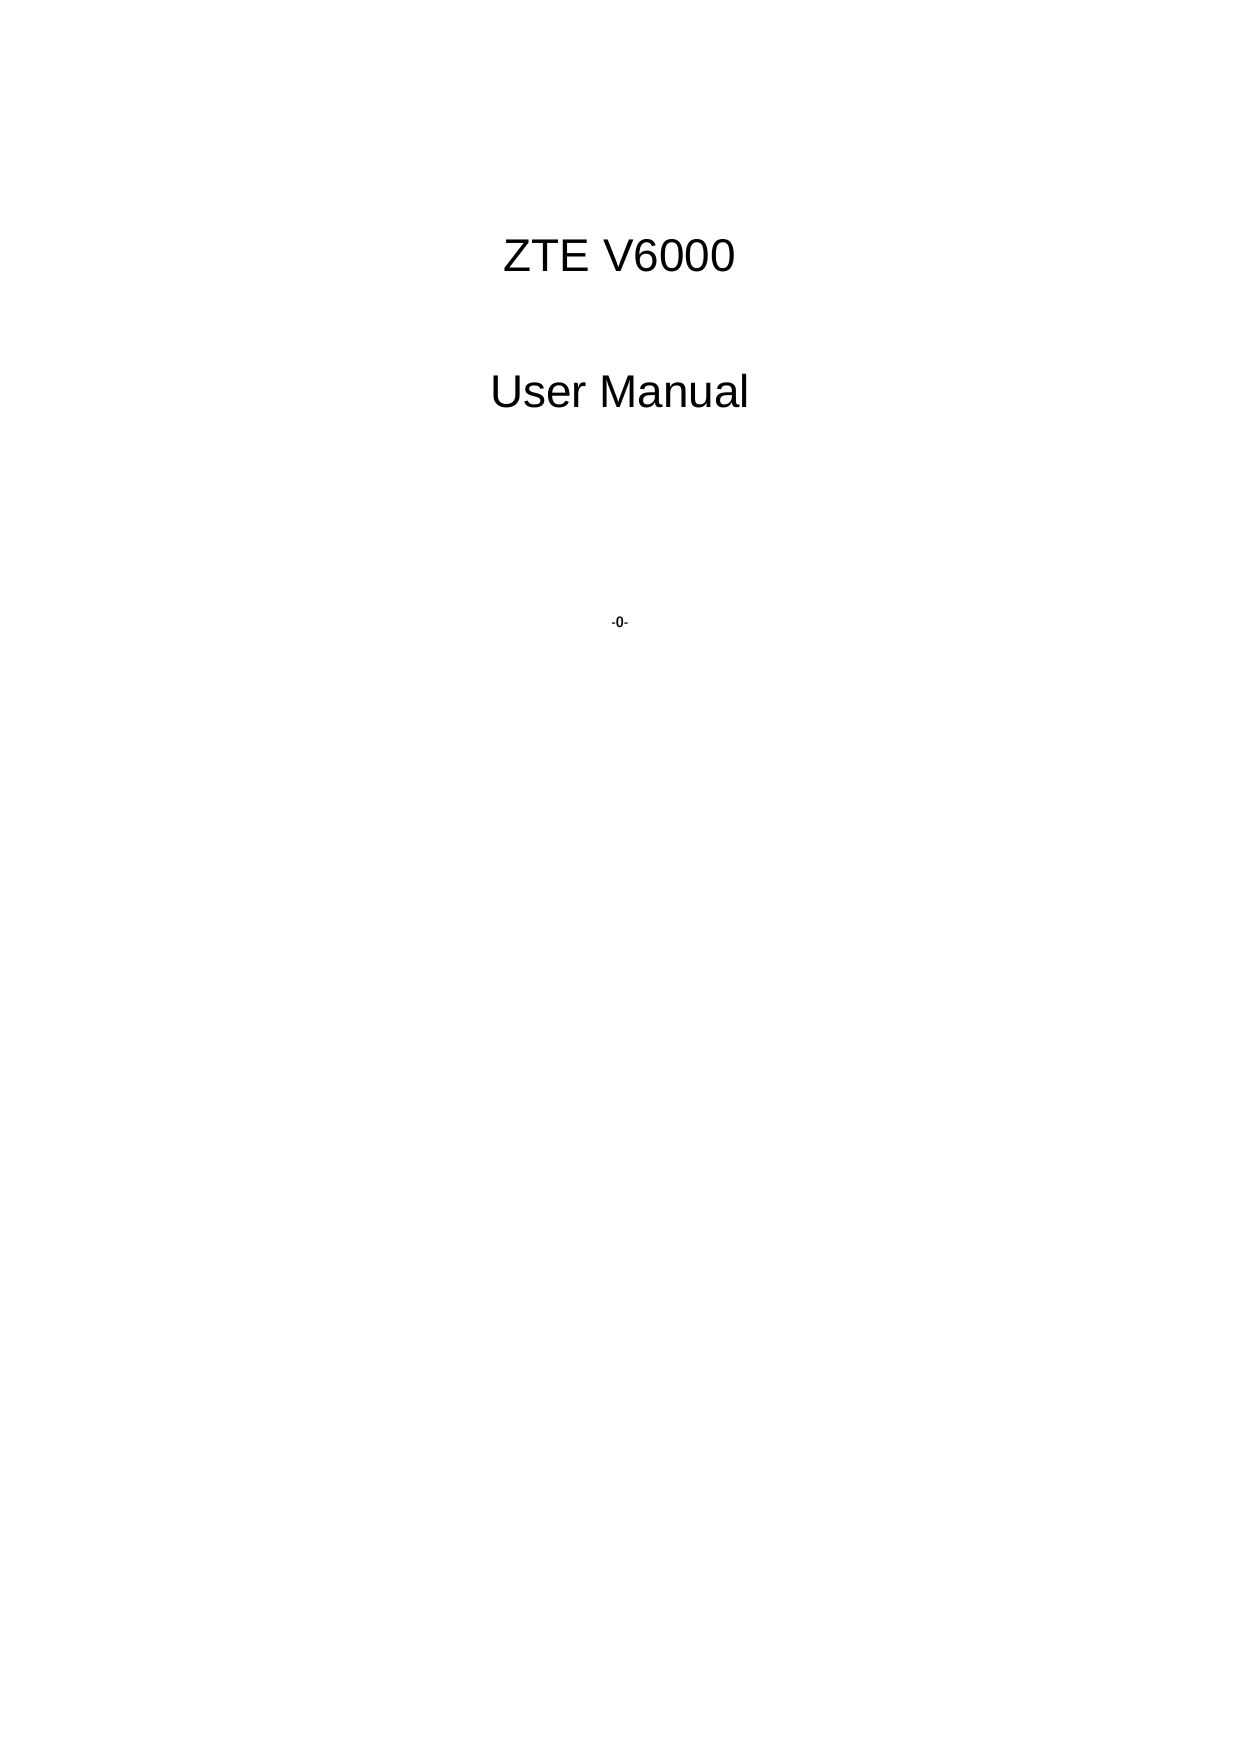  -0-   ZTE V6000  User Manual 